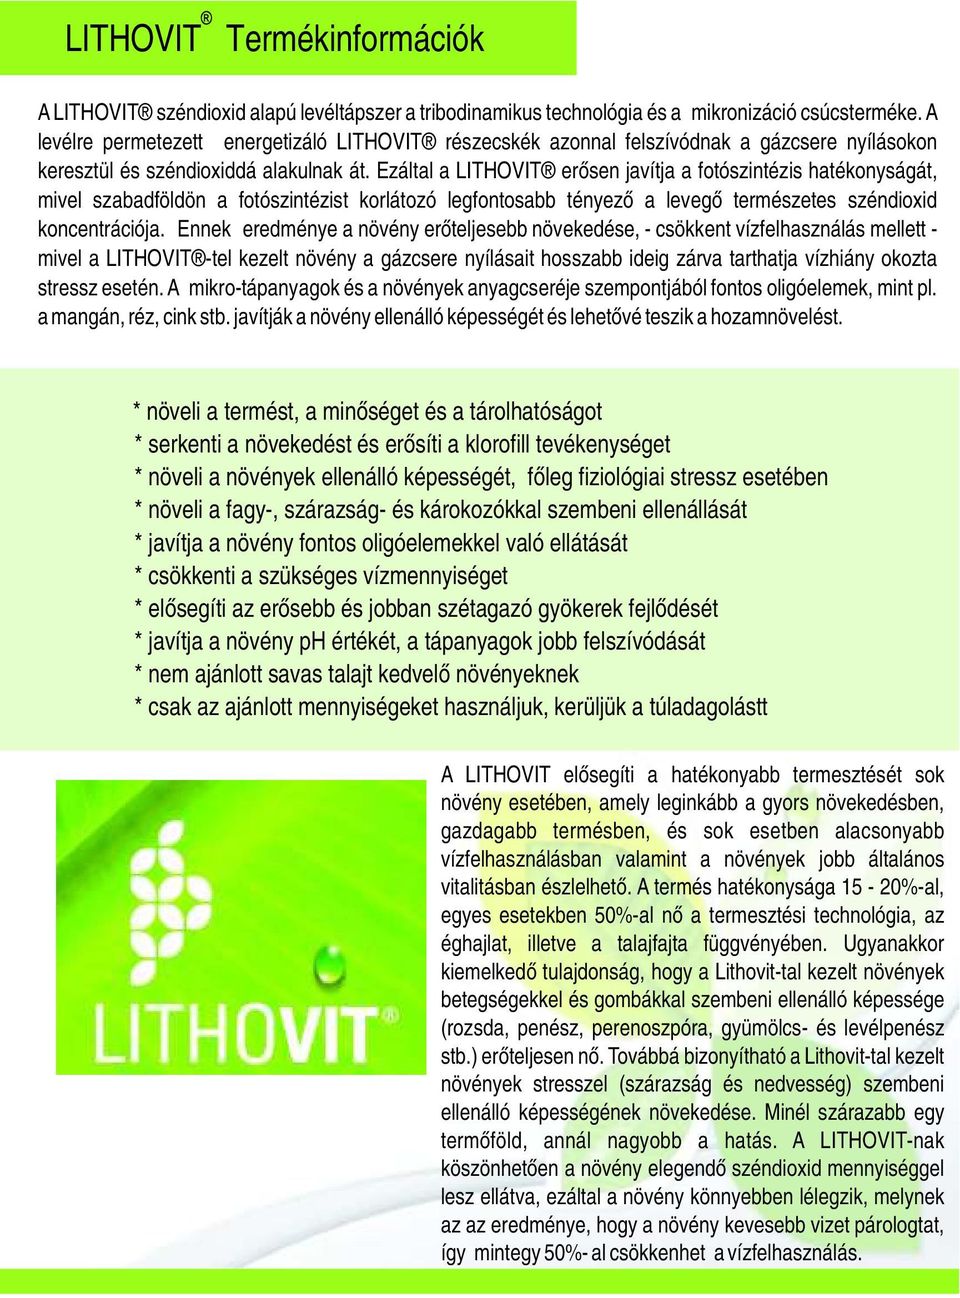 Ezáltal a LITHOVIT erősen javítja a fotószintézis hatékonyságát, mivel szabadföldön a fotószintézist korlátozó legfontosabb tényező a levegő természetes széndioxid koncentrációja.